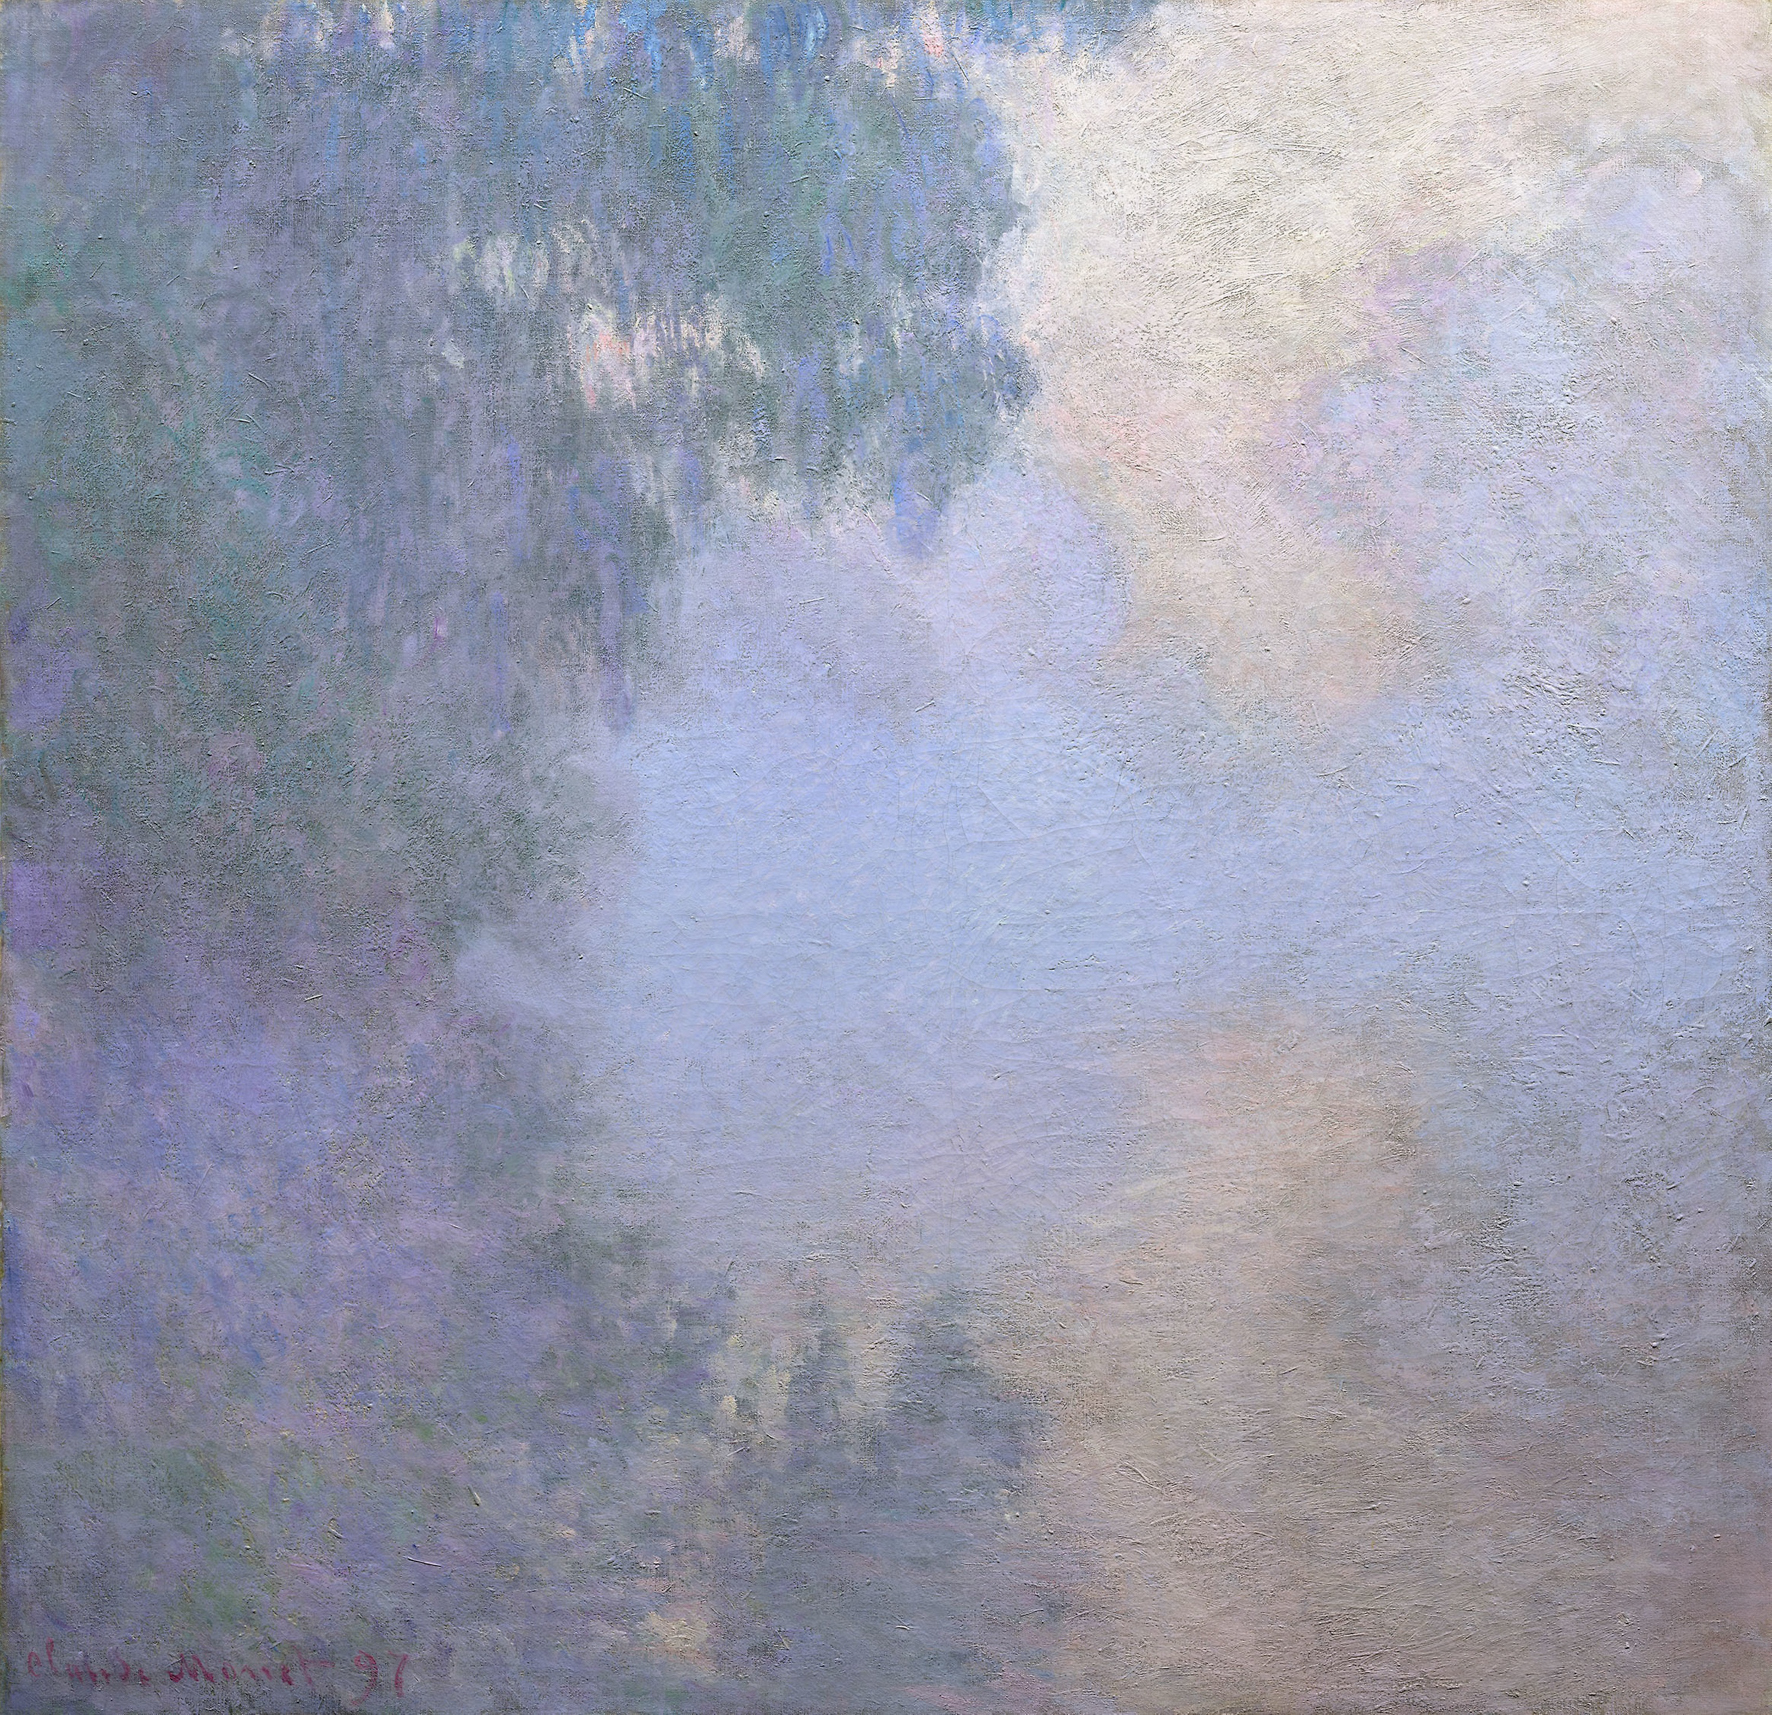 Tableau de Claude Monet, Bras de Seine près de Giverny dans le brouillard (1897)